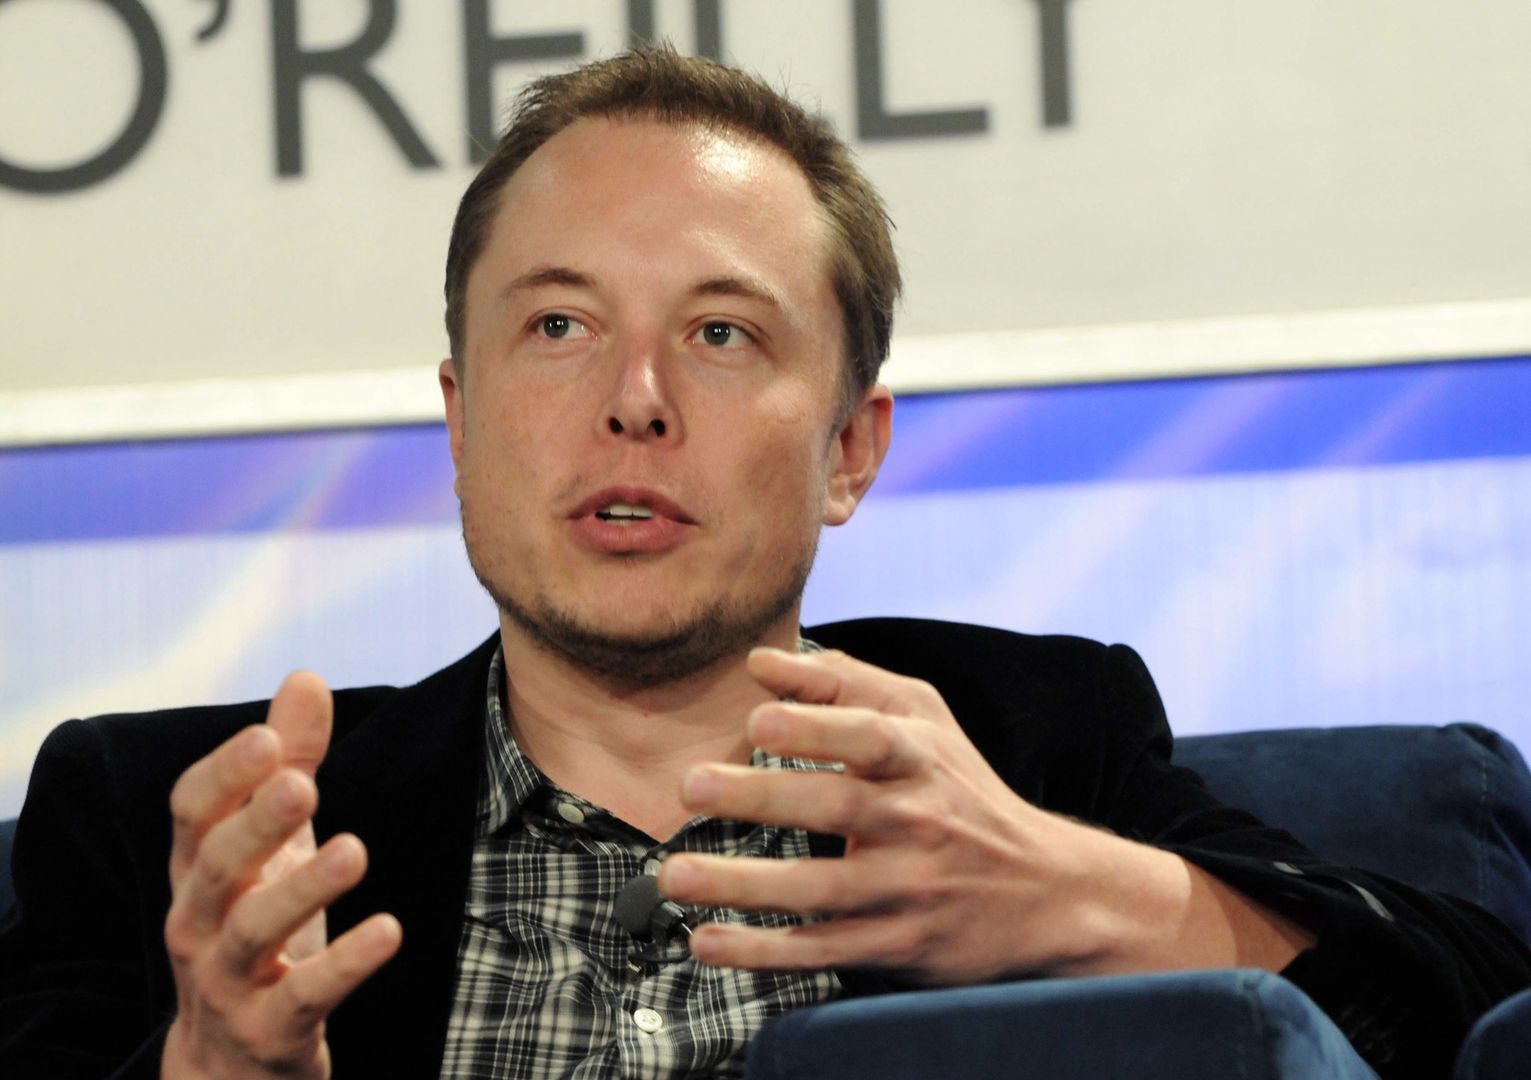 Elon Musk w Polsce? W sieci pojawiły się informacje na temat wizyty miliardera